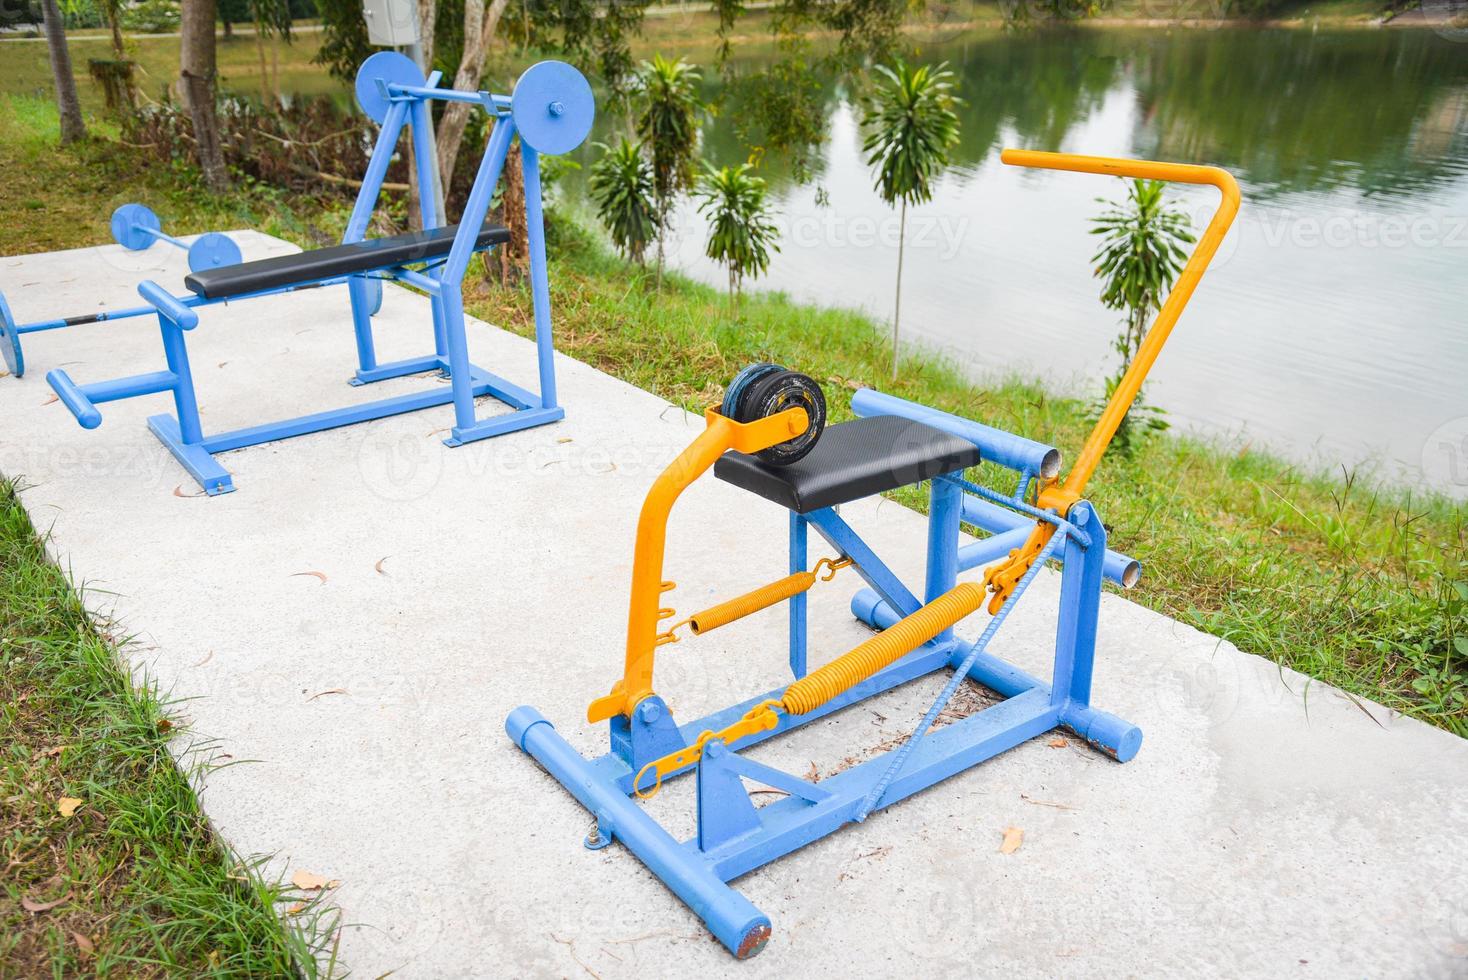 attrezzatura per la palestra all'aperto nel parco giochi nel giardino pubblico, attrezzatura per il fitness all'aperto nel parco foto